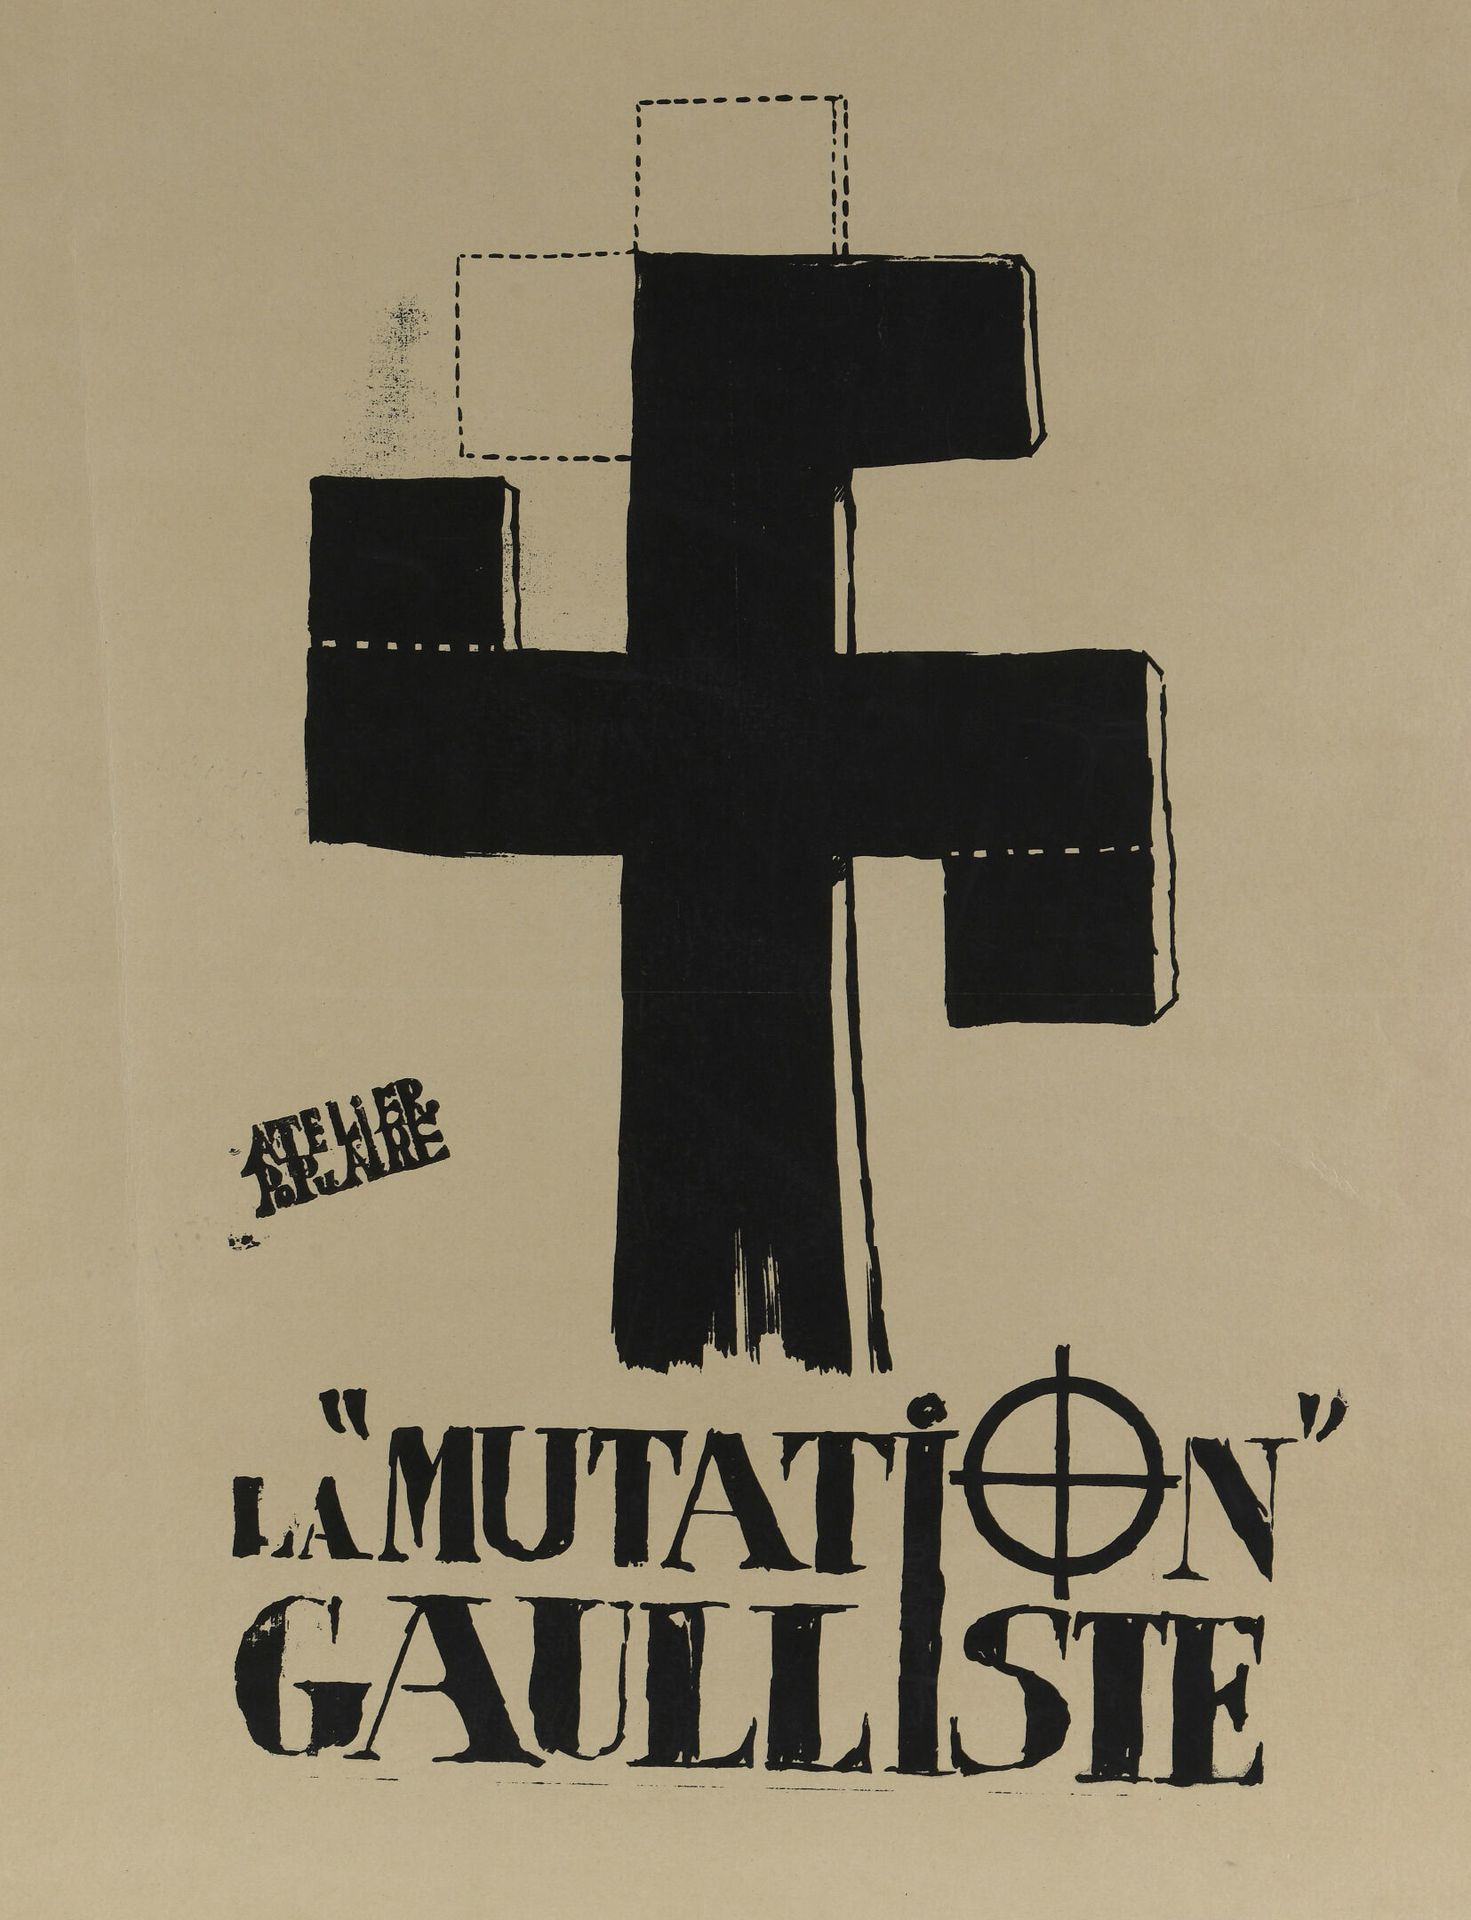 Null [Cartel de mayo de 1968]

Atelier Populaire

La mutación gaullista

Serigra&hellip;